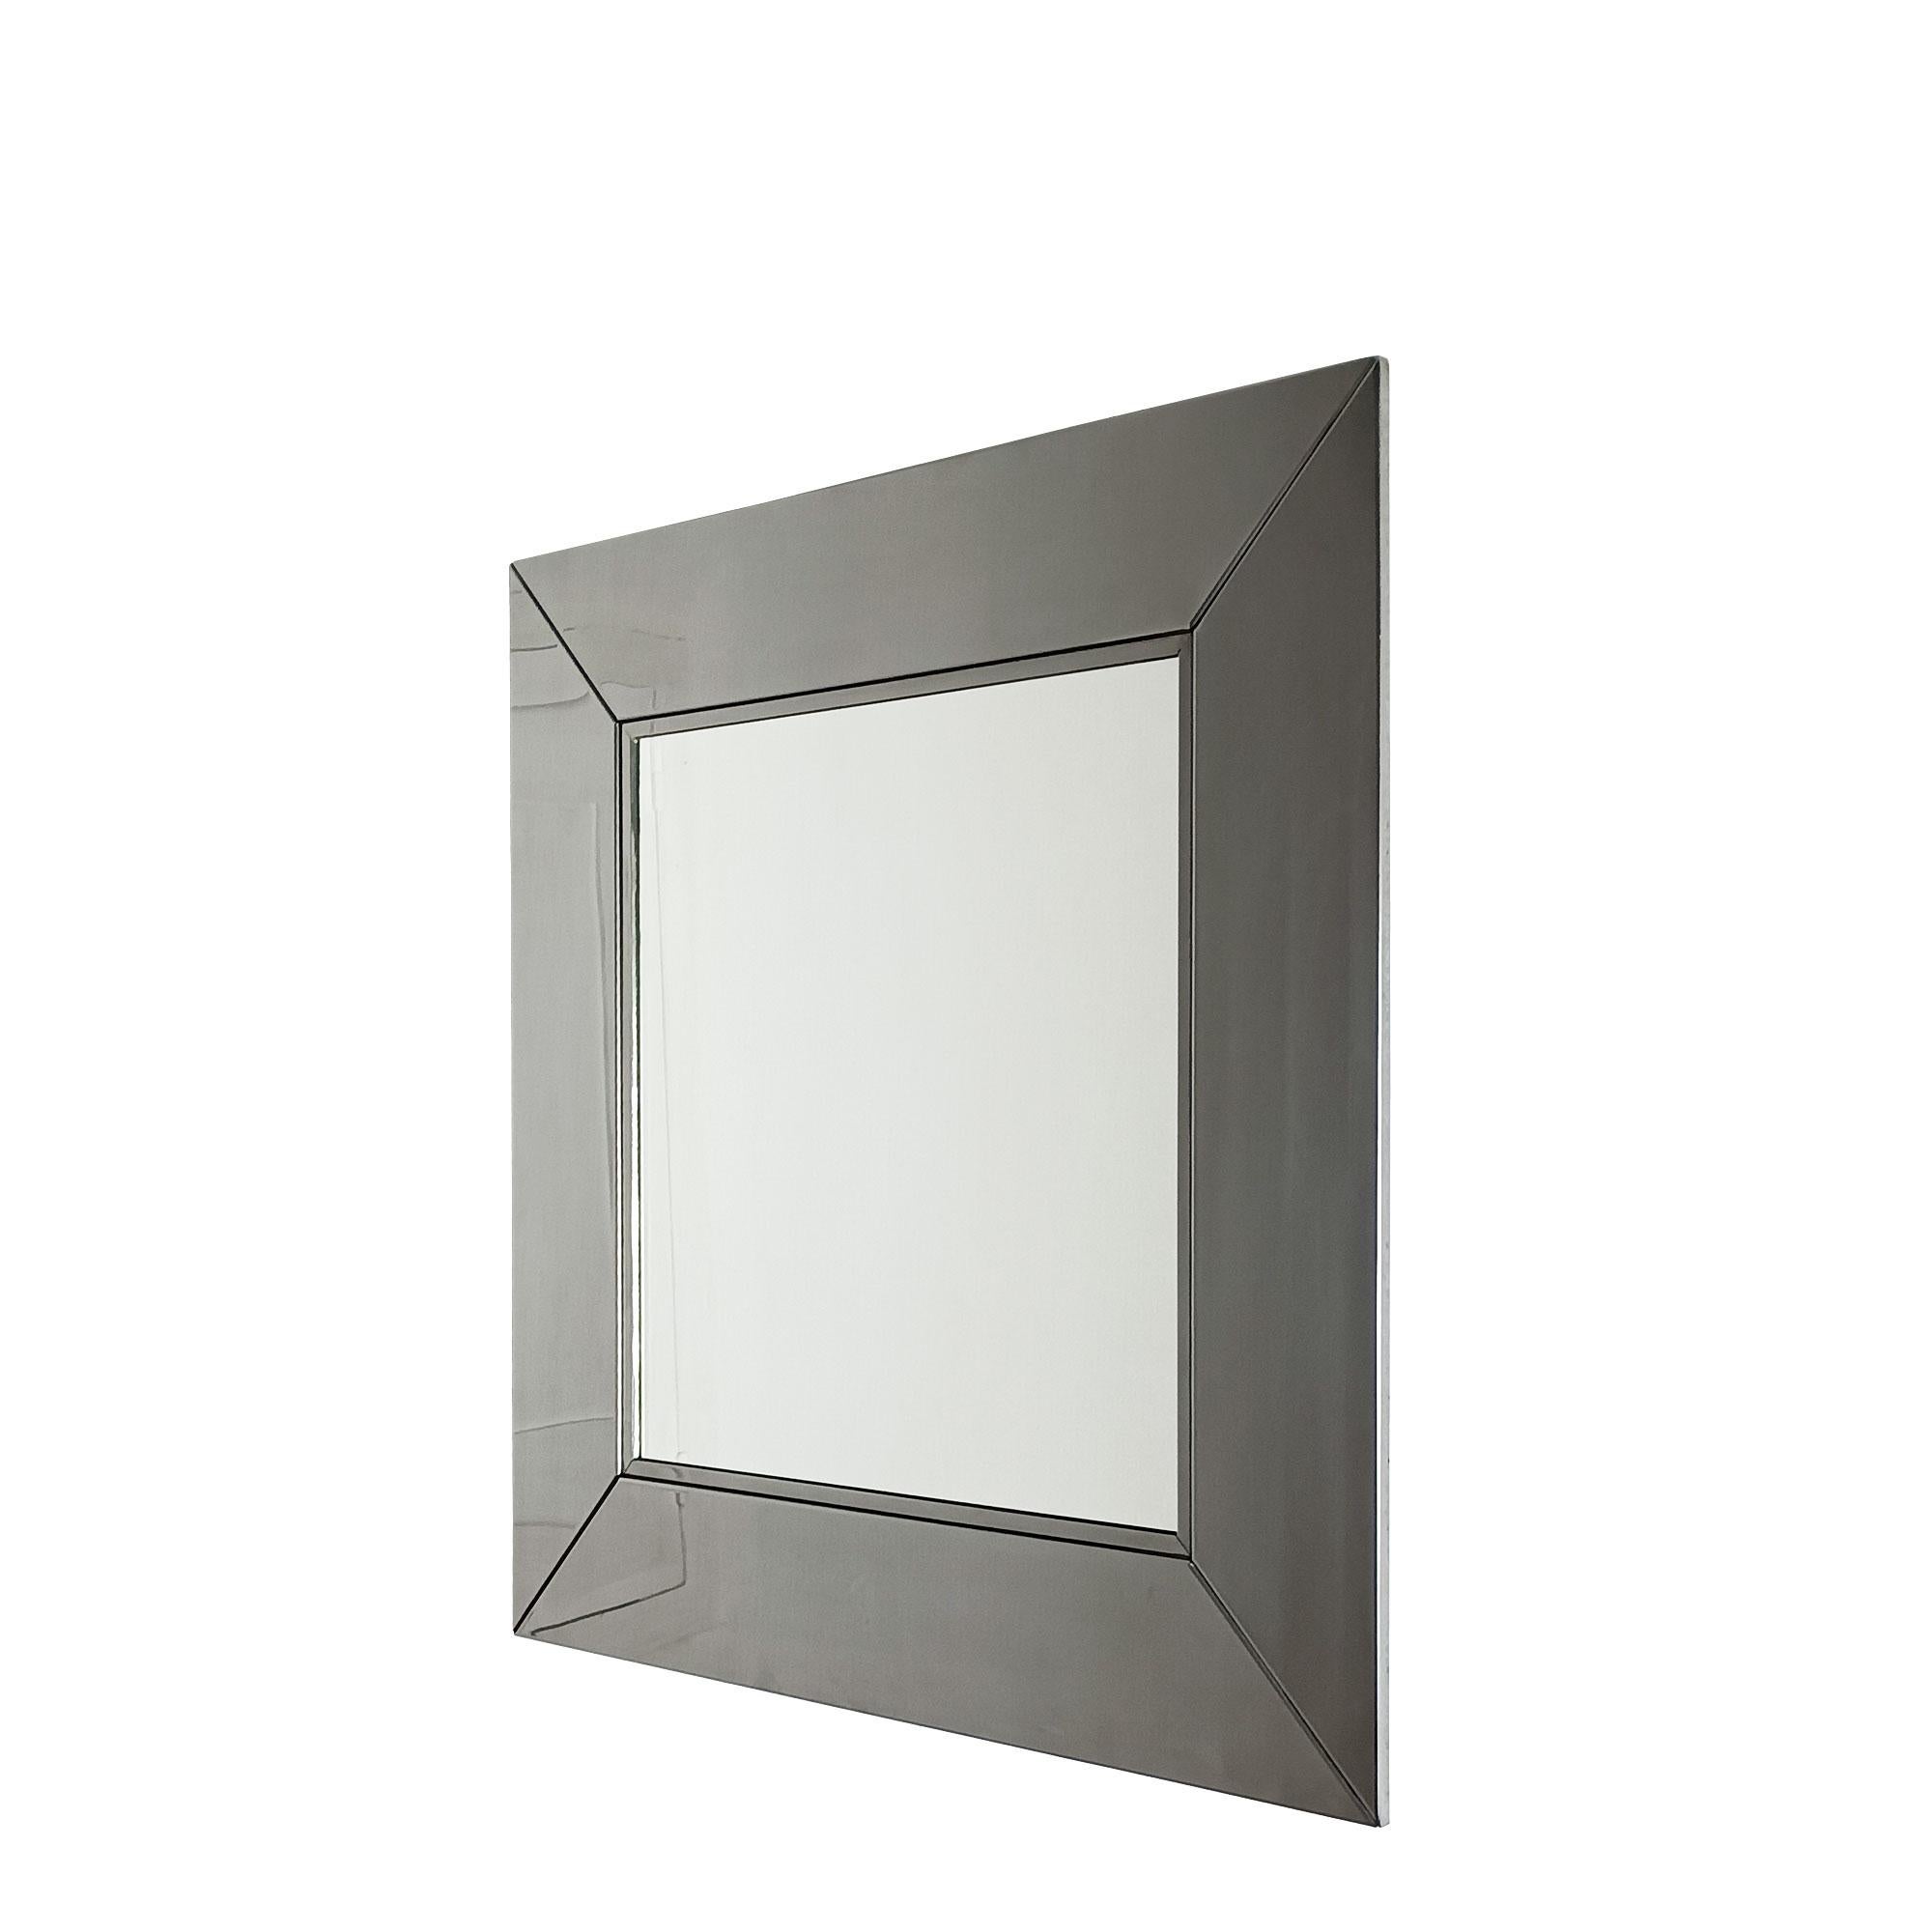 Miroir avec cadre en métal chromé. Très haute qualité.
Design/One pour Cidue.
Italie circa 1970